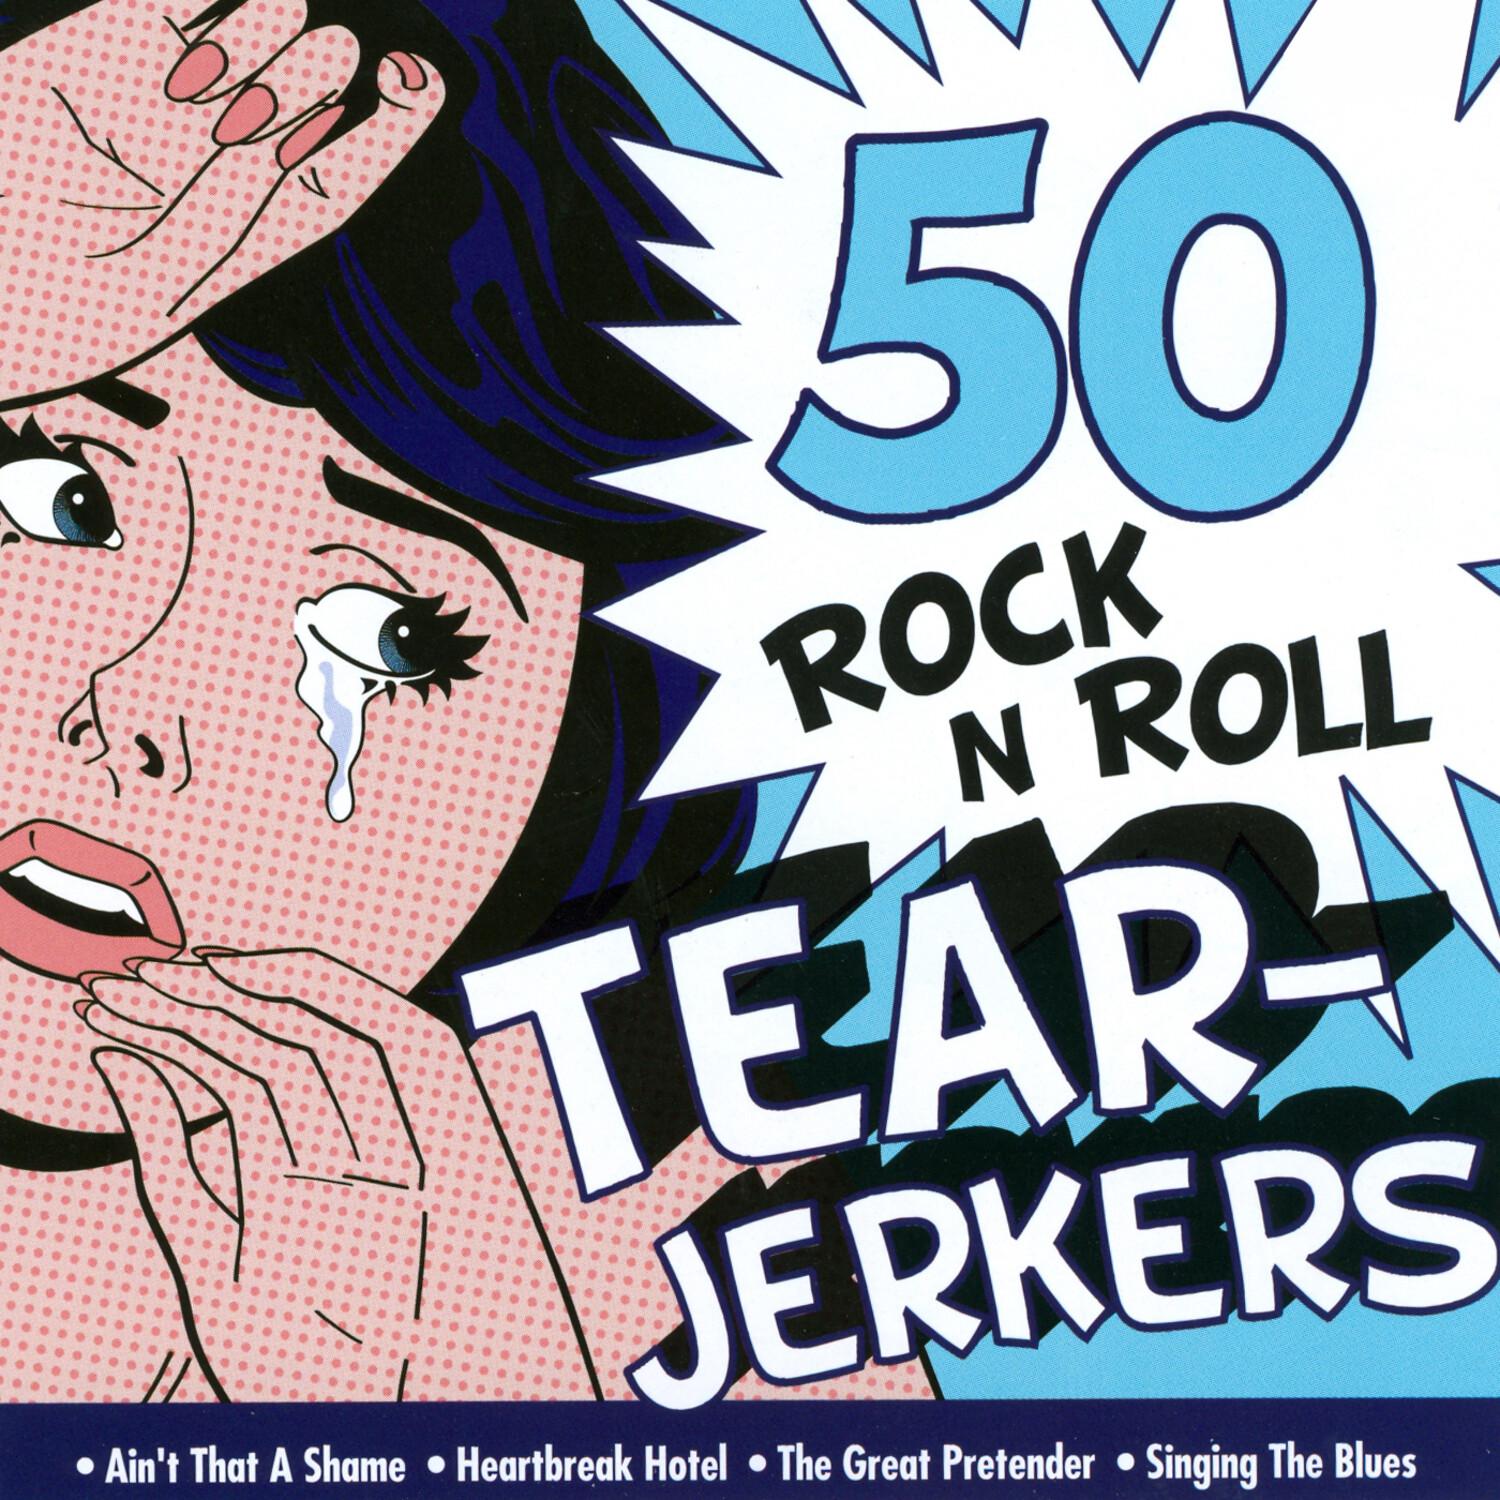 50 Rock 'N' Roll Tearjerkers